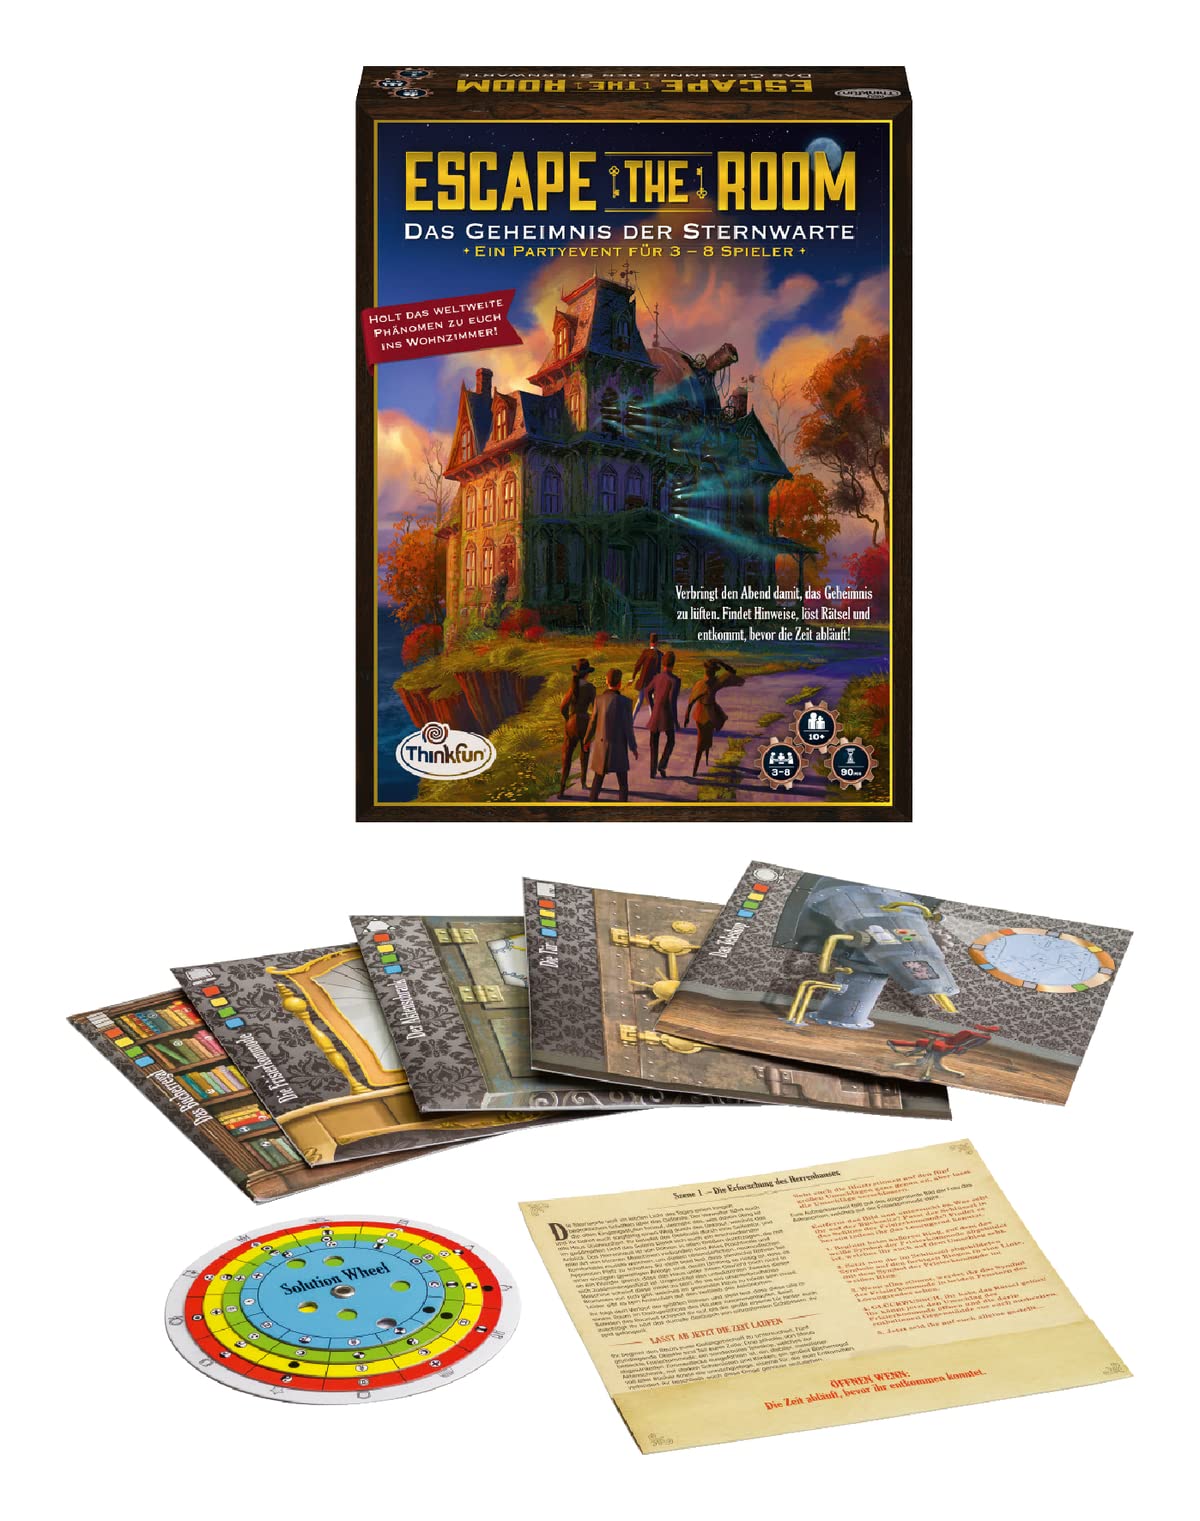 ThinkFun - 76313 - Escape the Room: Das Geheimnis der Sternwarte. Löst die Rätsel und enkommt der Sternwarte! Ein perfektes Escape-Spiel für Einsteiger!